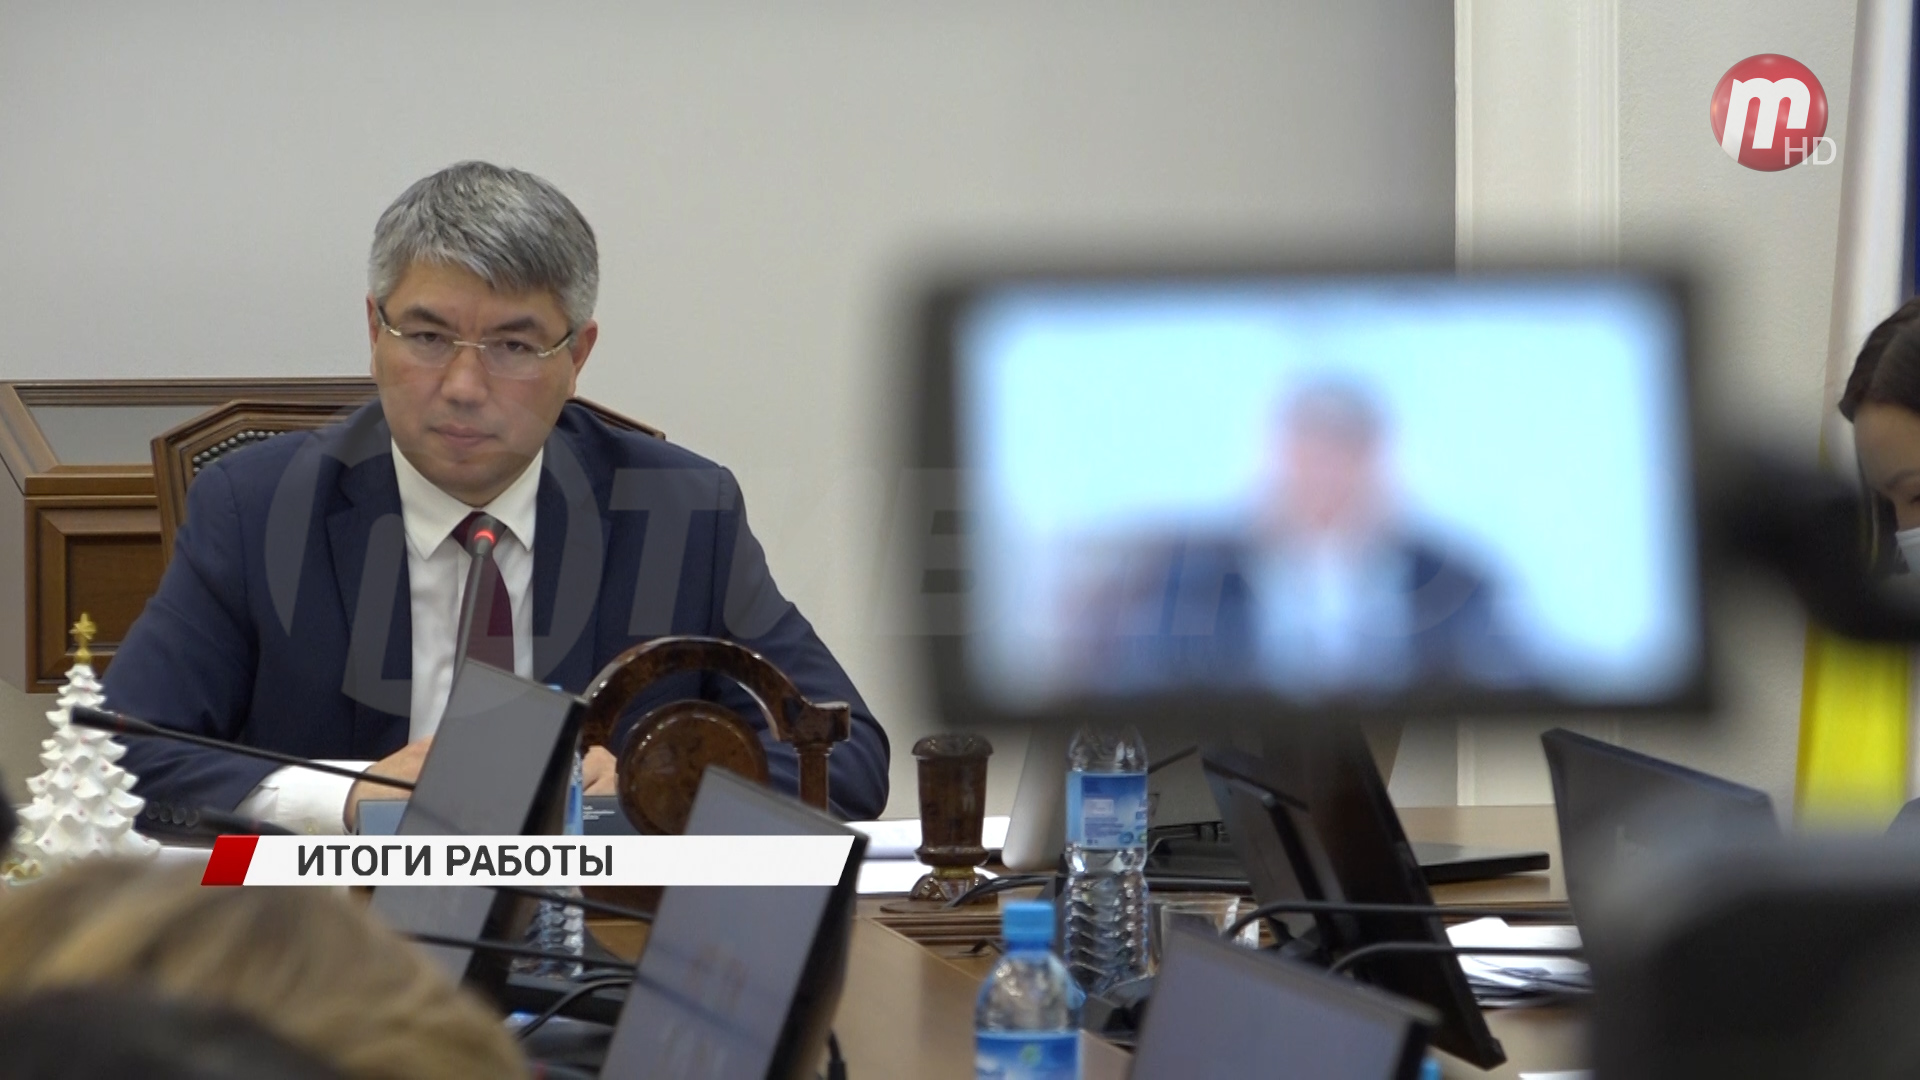 Алексей Цыденов подвёл итоги за неполные 5 лет на посту руководителя региона